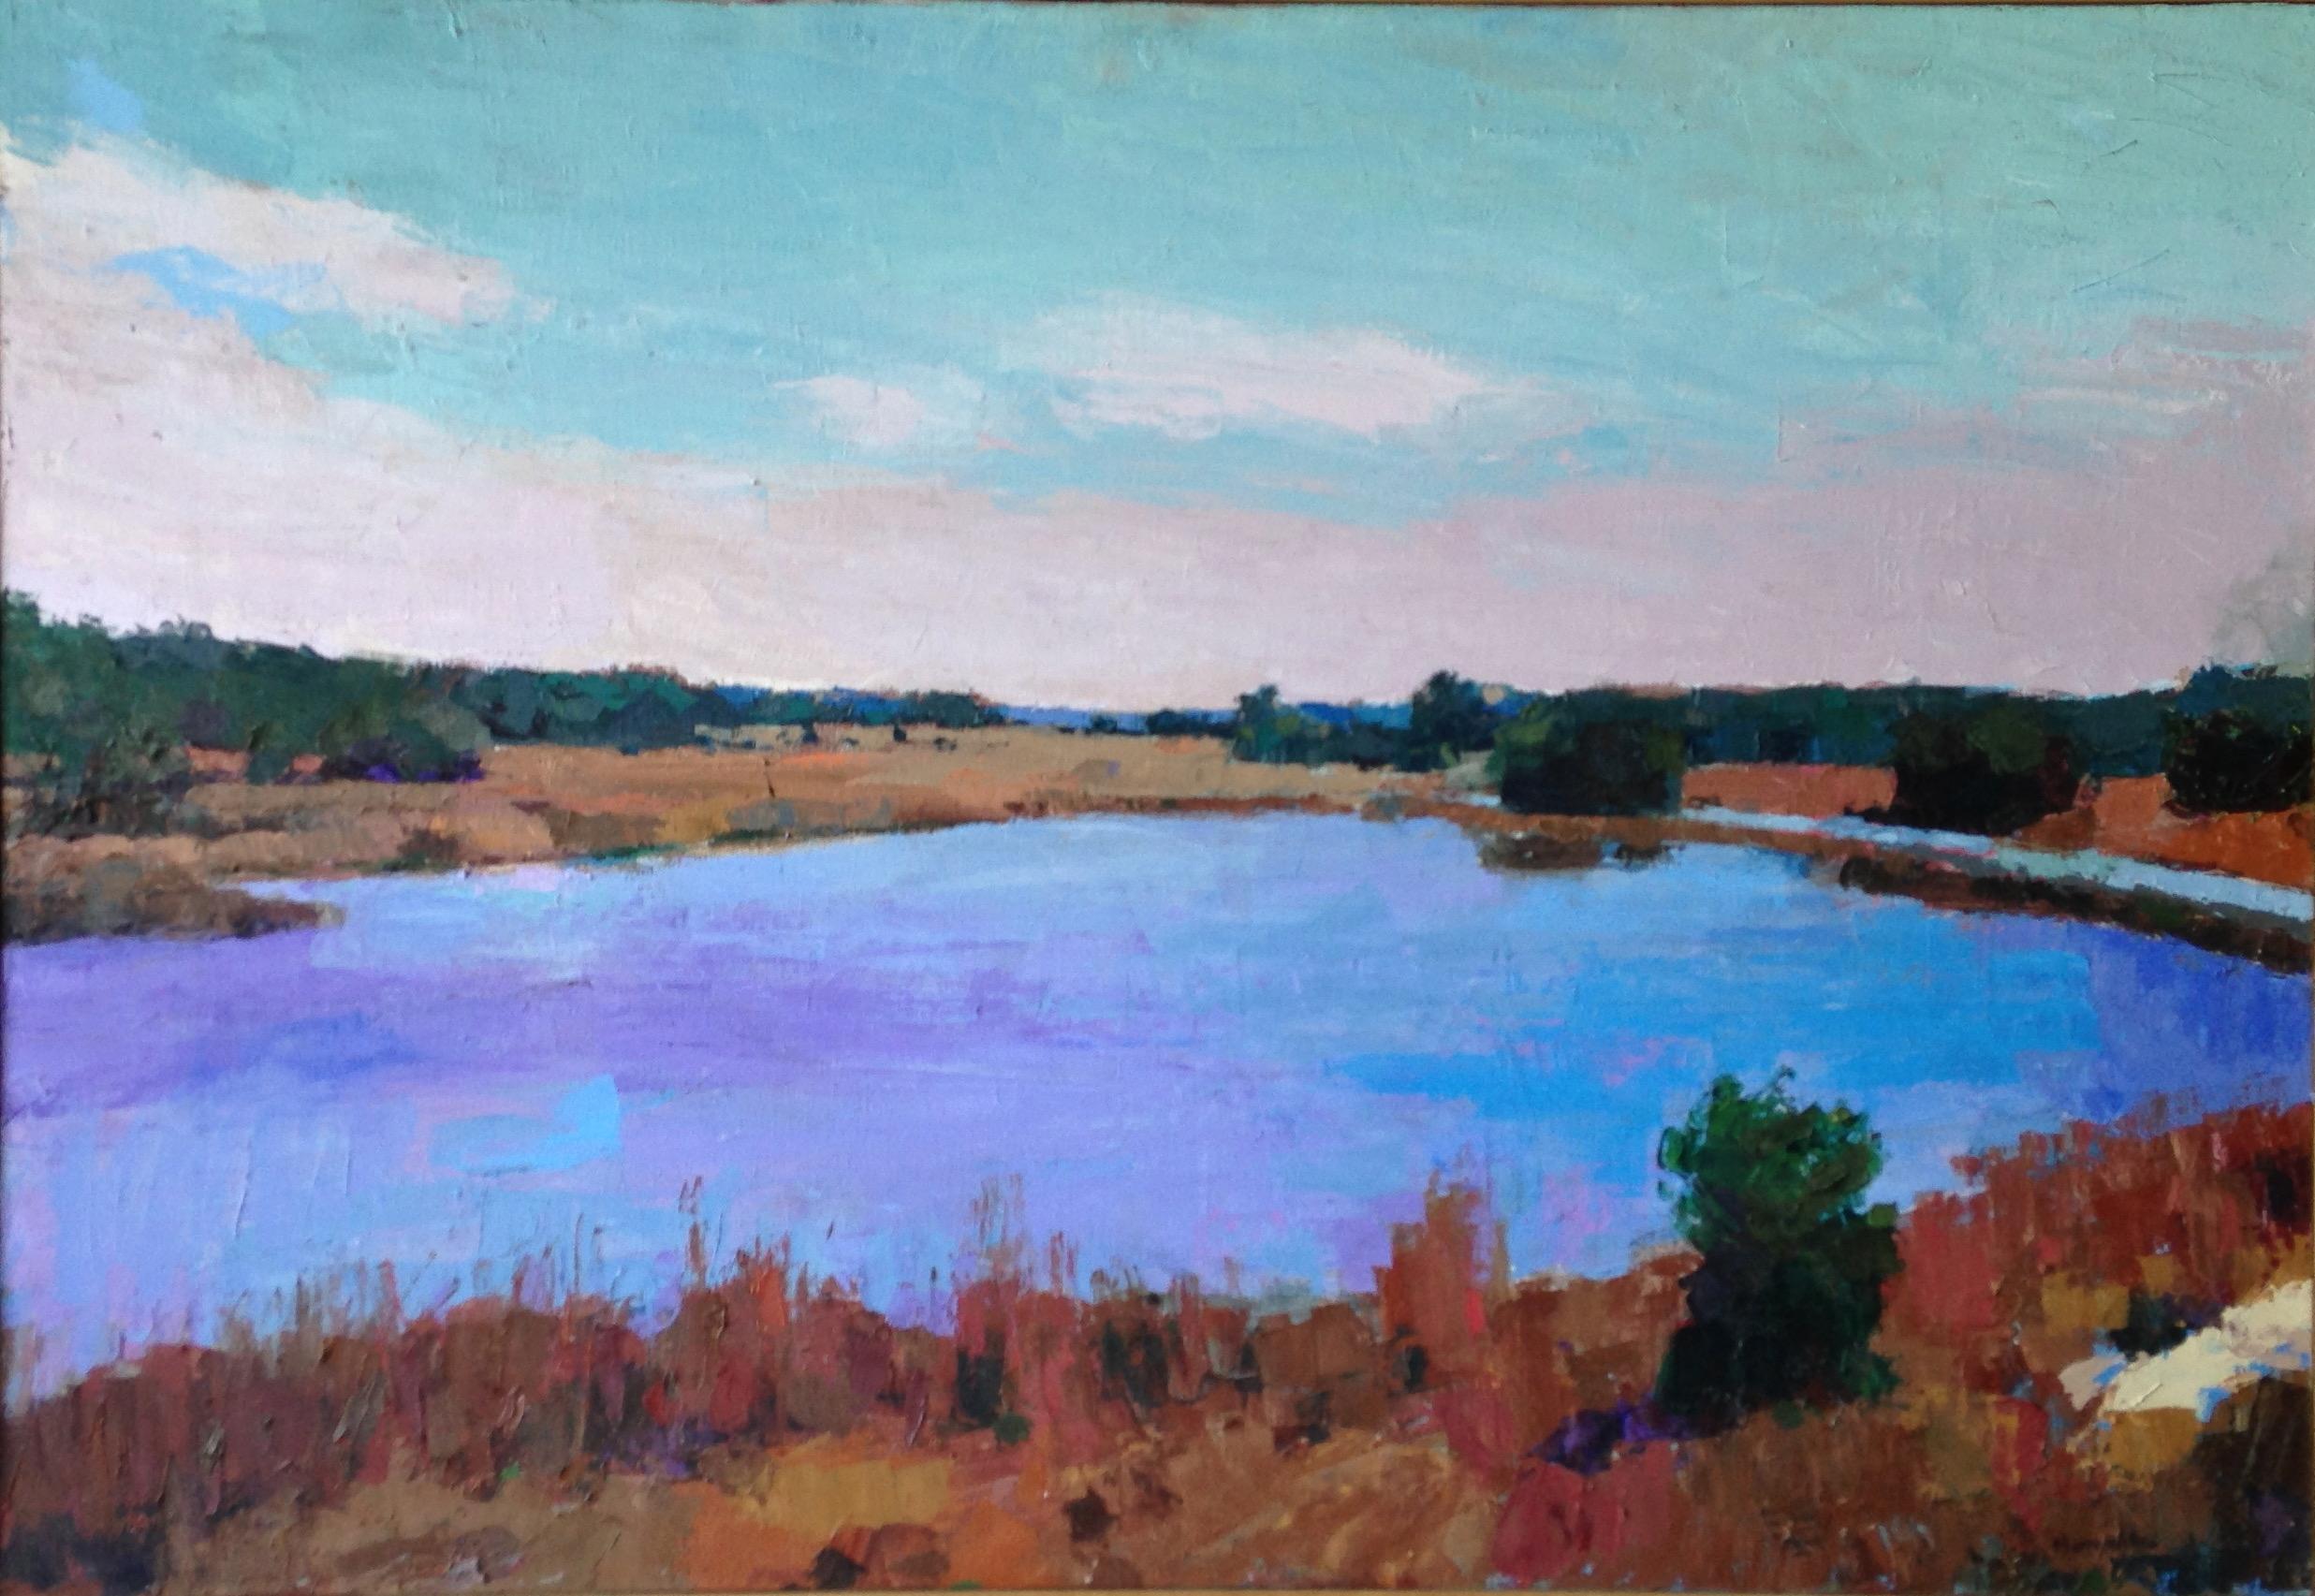 Landscape Painting Larry Horowitz - Peinture à l'huile "Wildlife Refuge", paysage d'un lac bleu avec marais et ciel